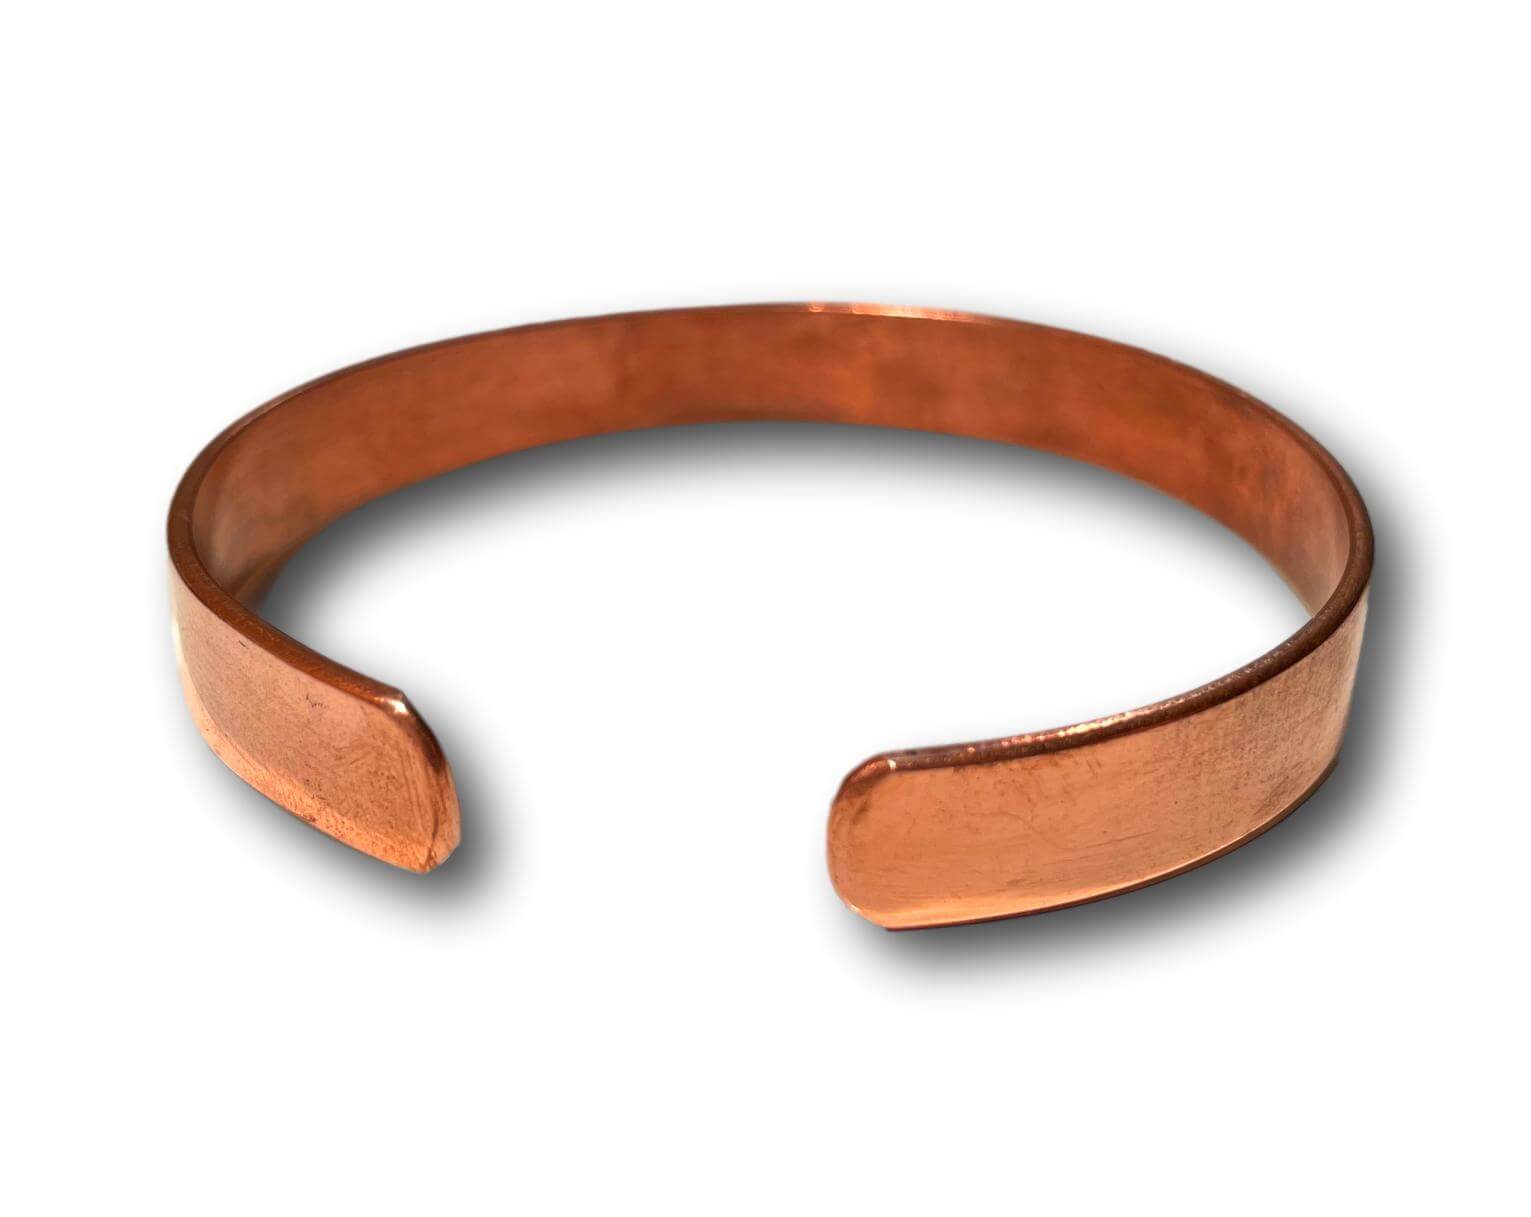 Bracelet, Plait Copper at Kent Saddlery from $30.00